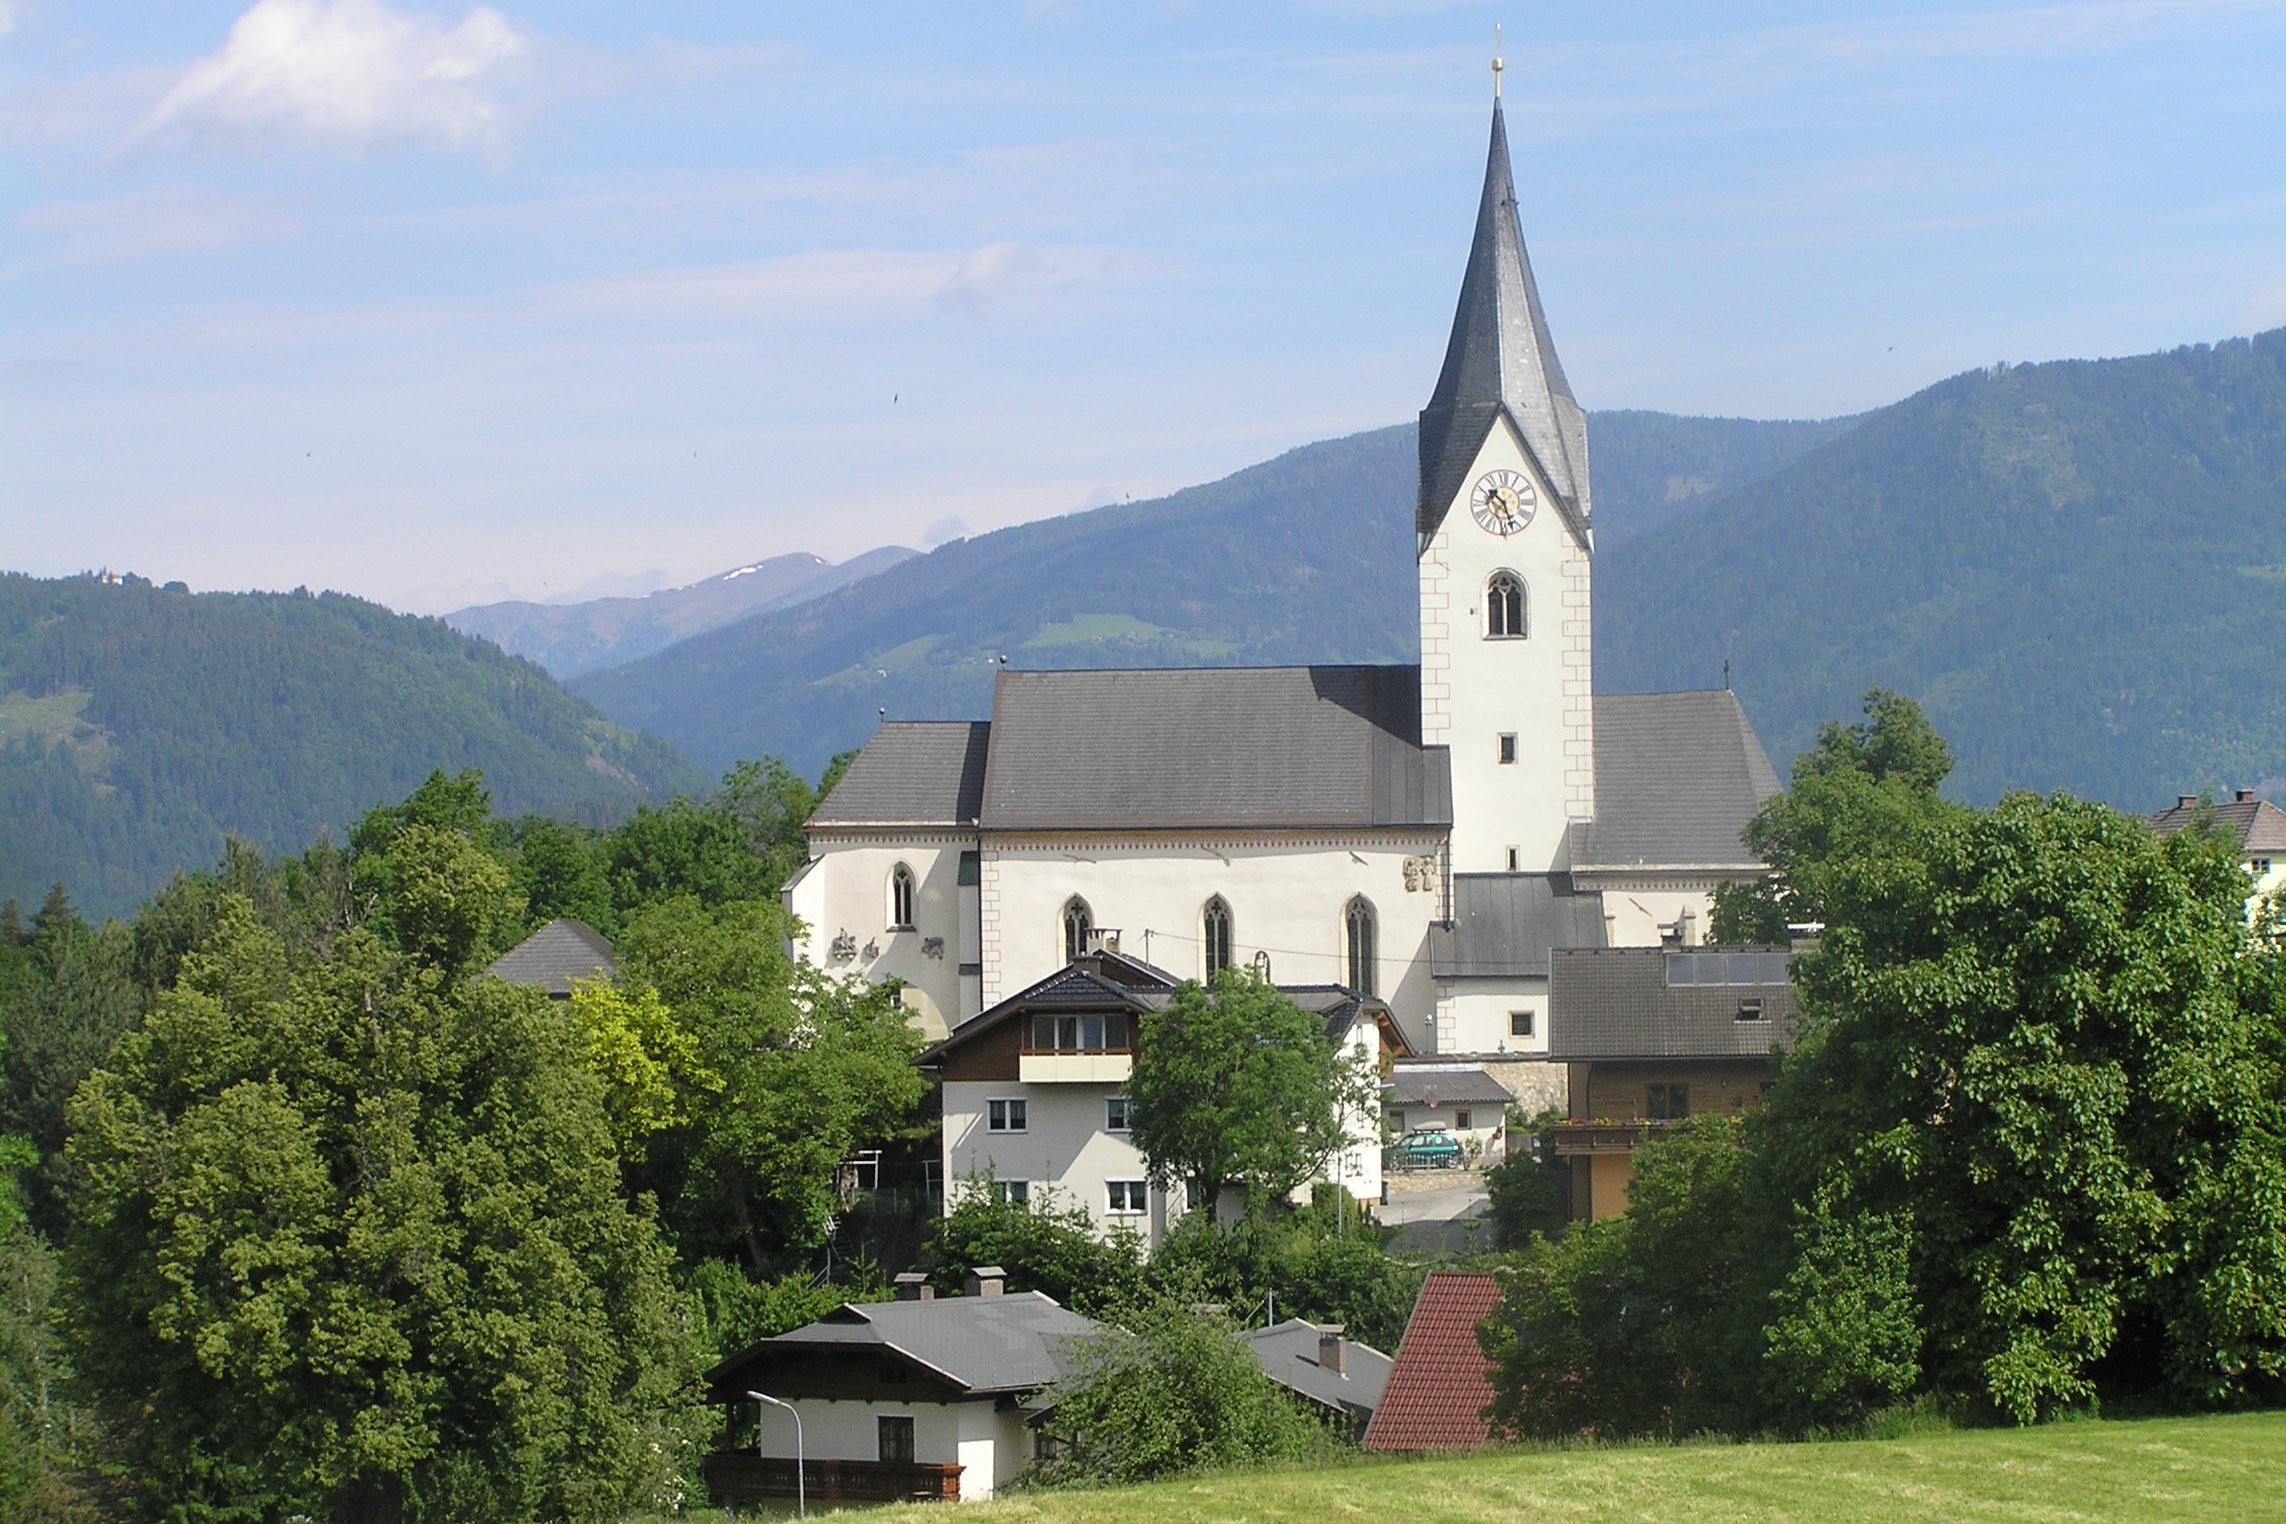 The parish and pilgrimage church in Maria Gail